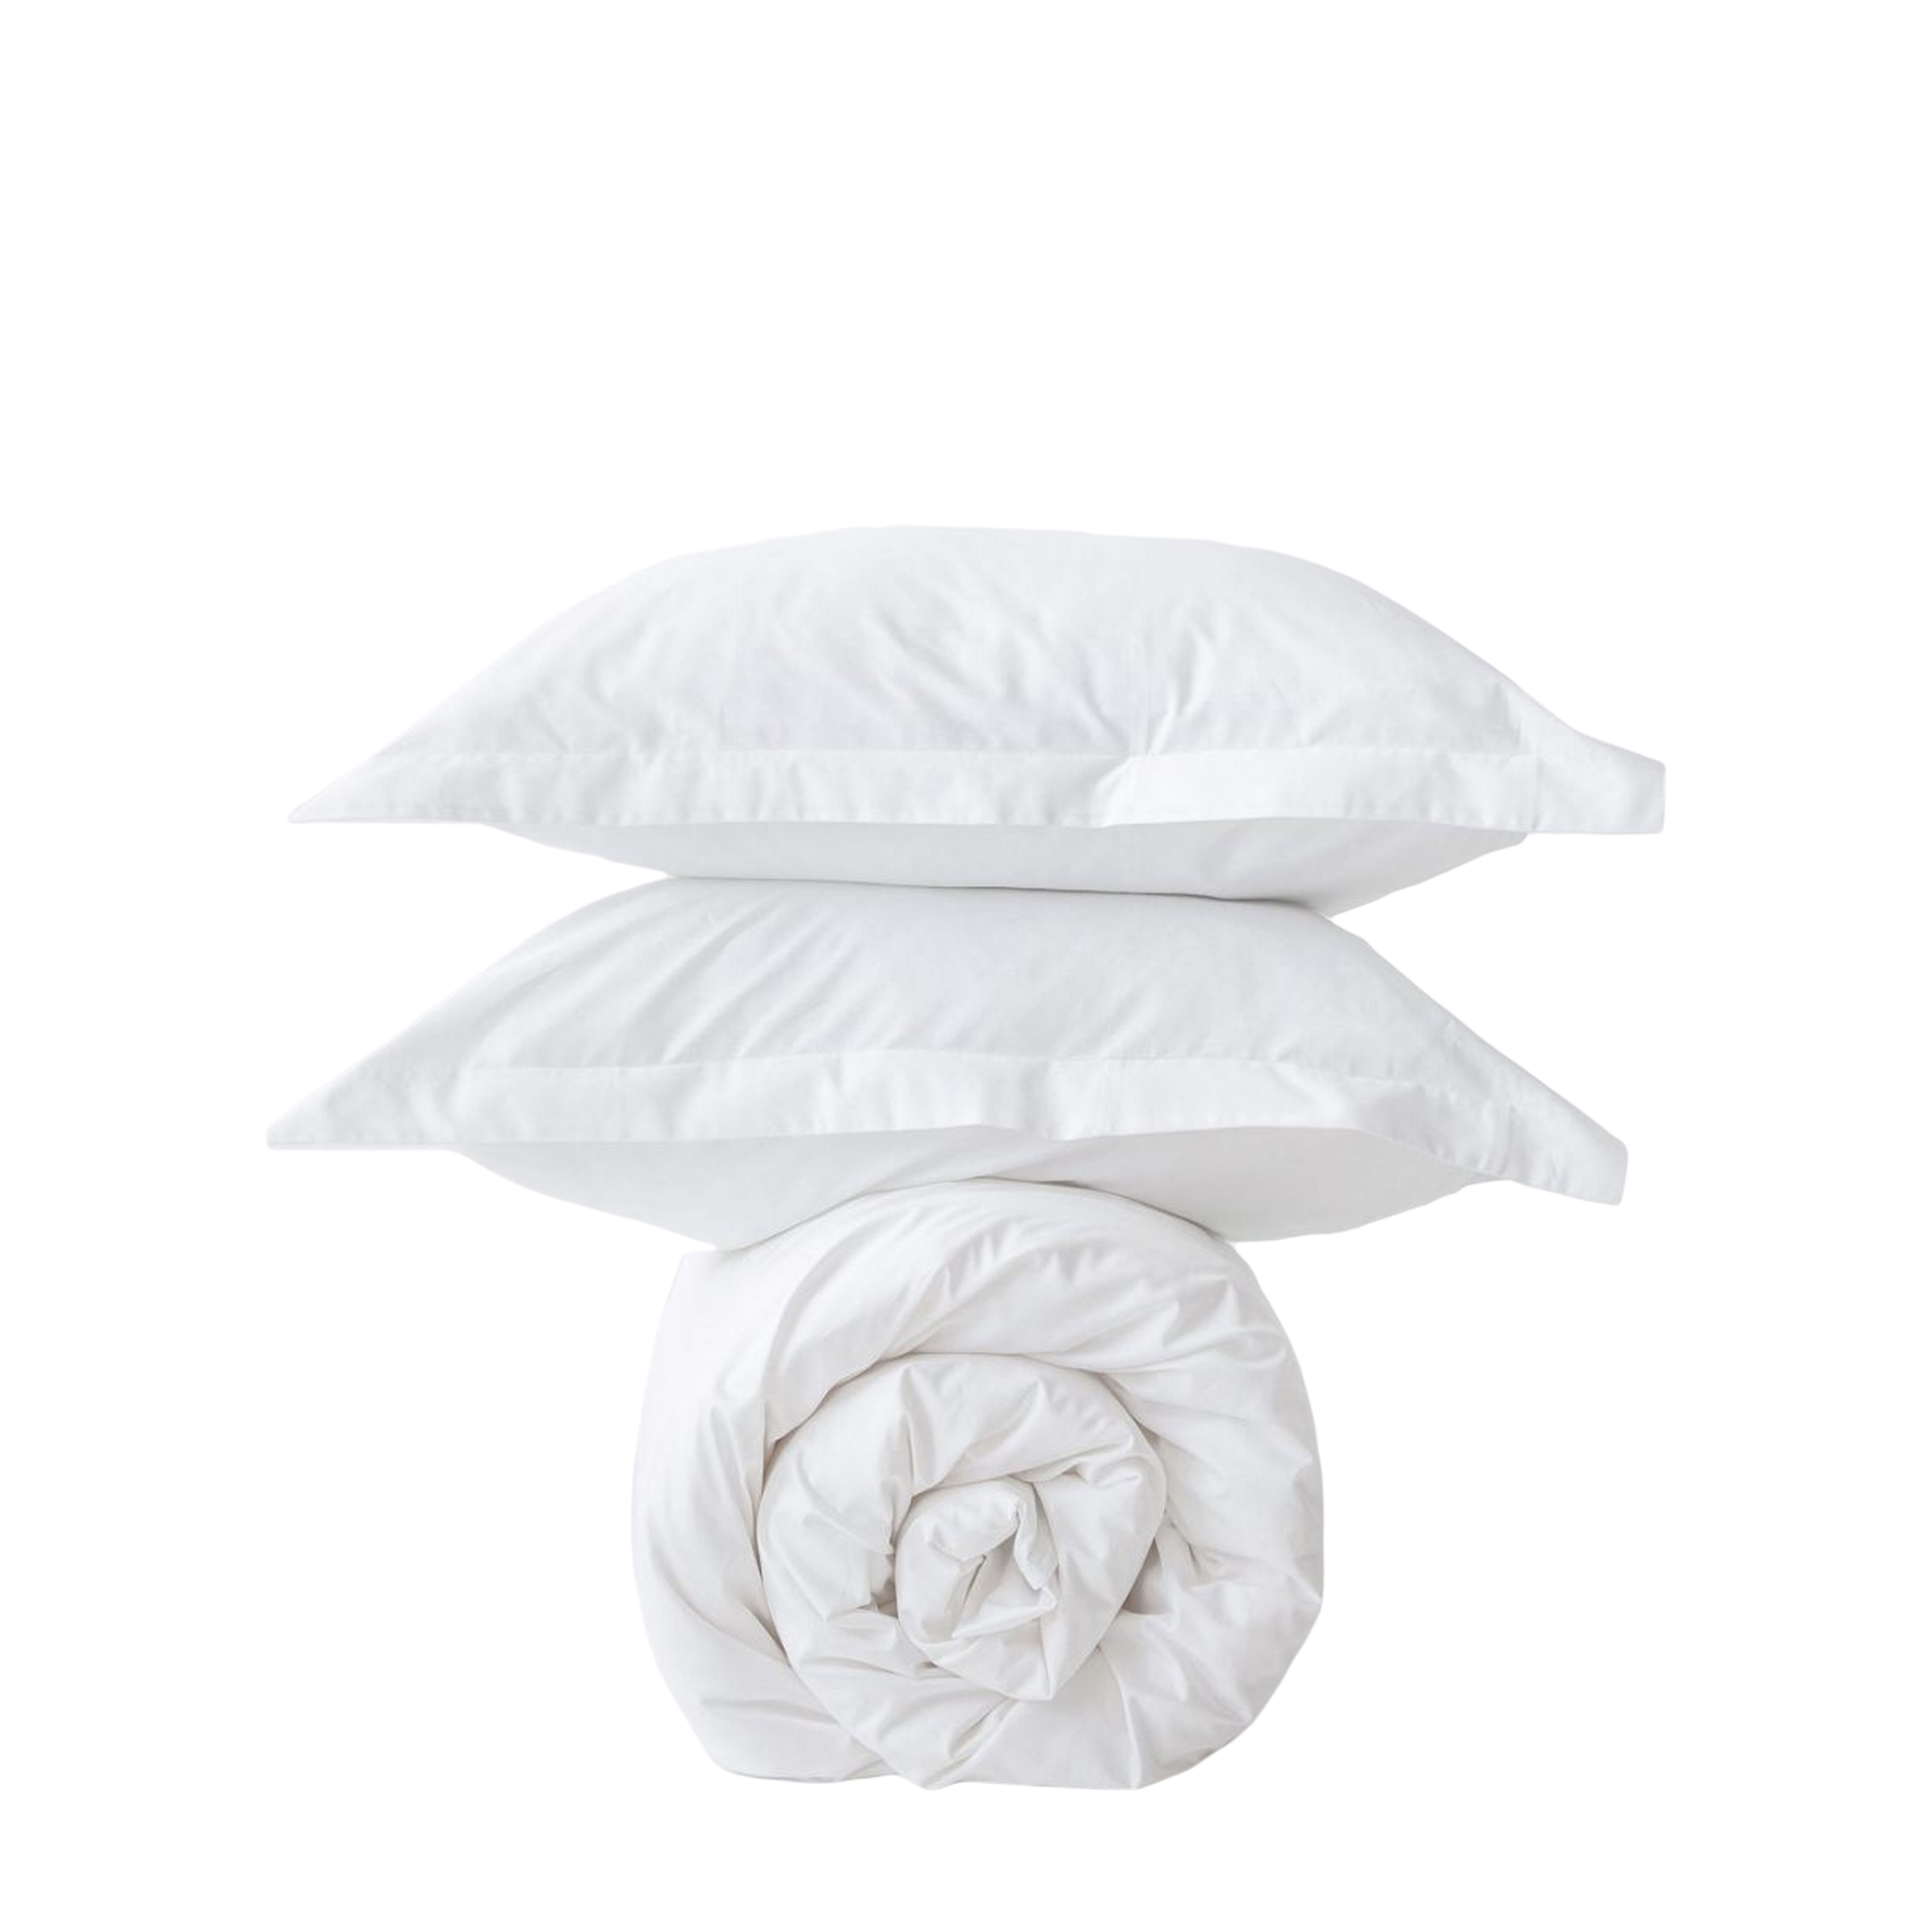 MORФEUS MORФEUS Комплект постельного белья Silk White, 2-спальный, сатин (200x200)